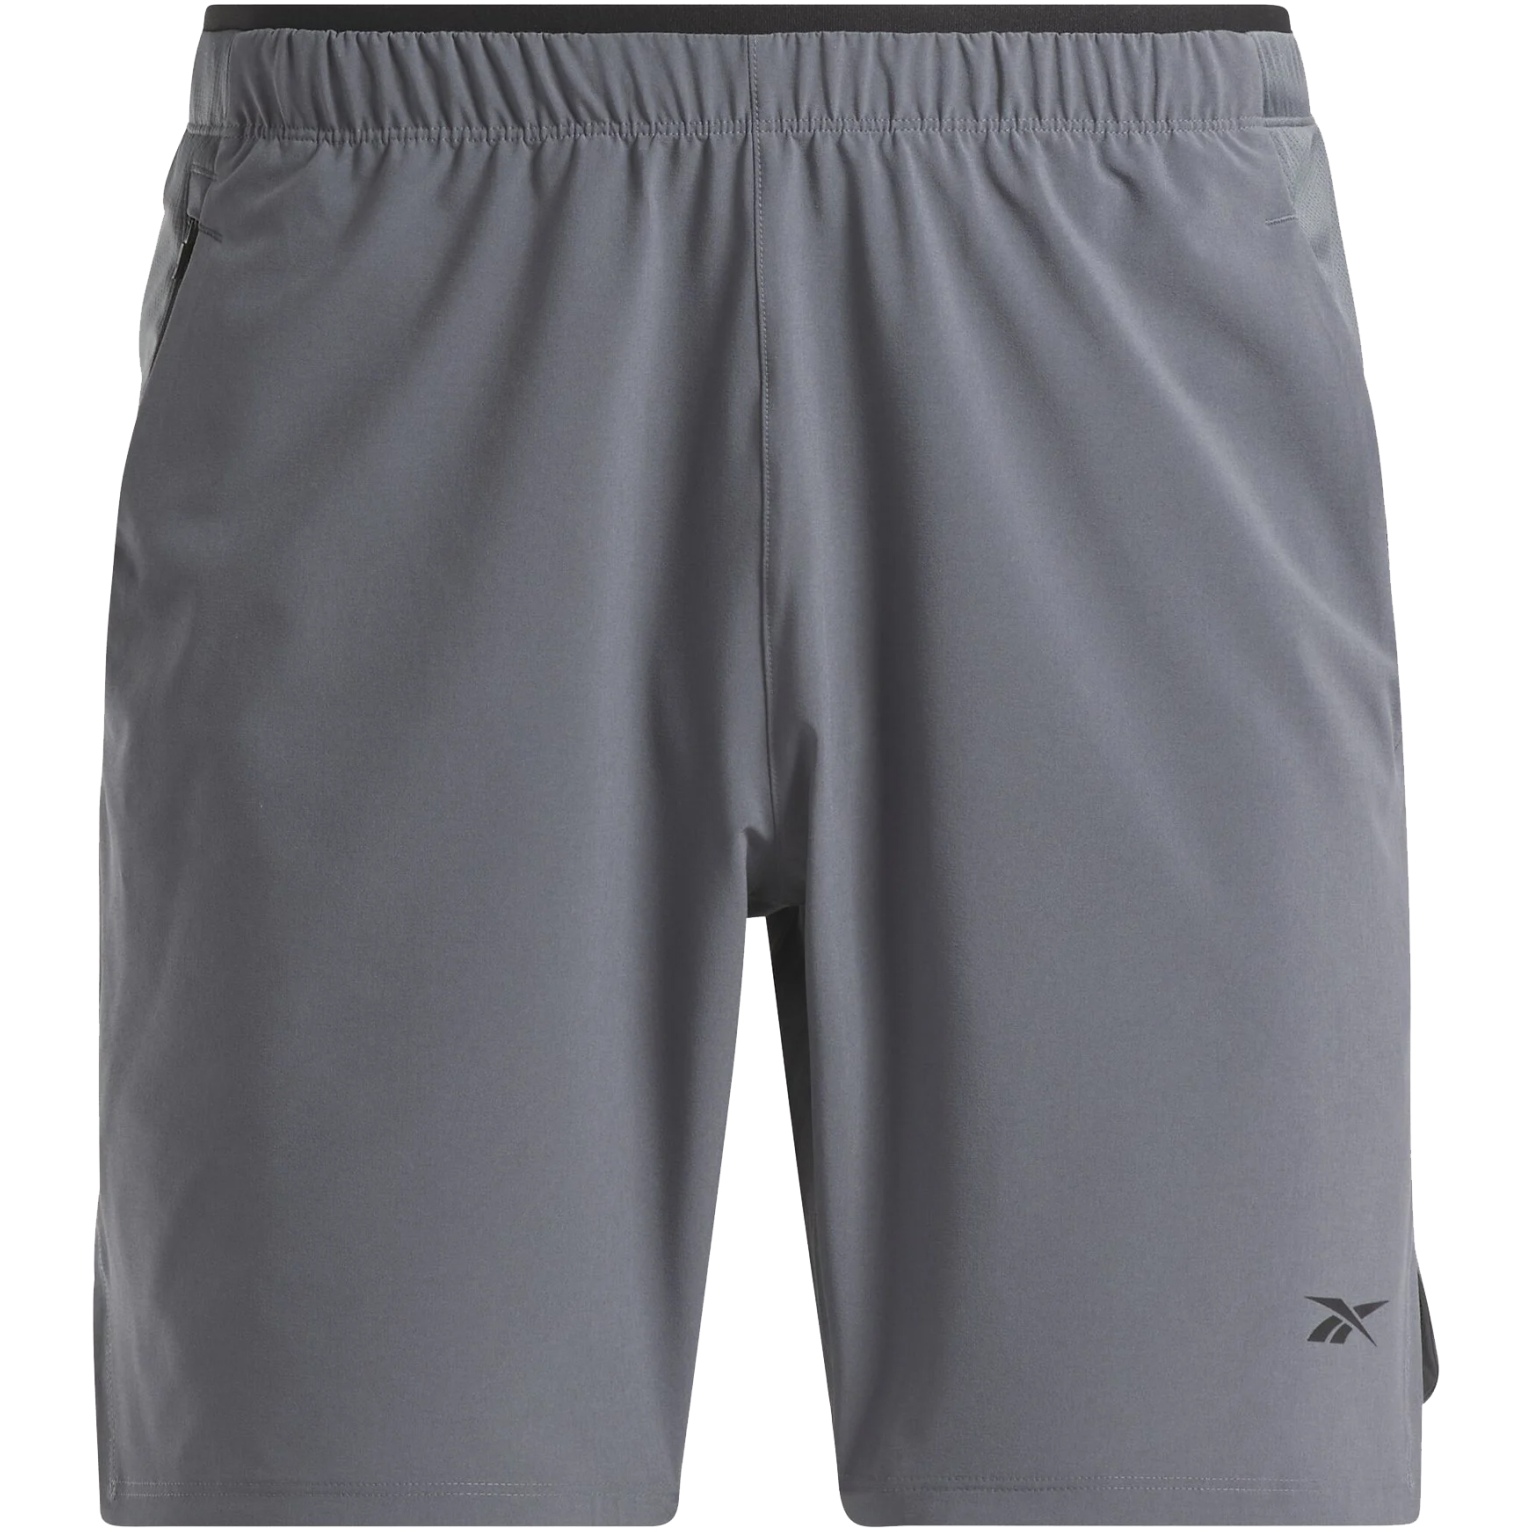 Productfoto van Reebok Strength 3.0 Shorts Heren - cold grey 6